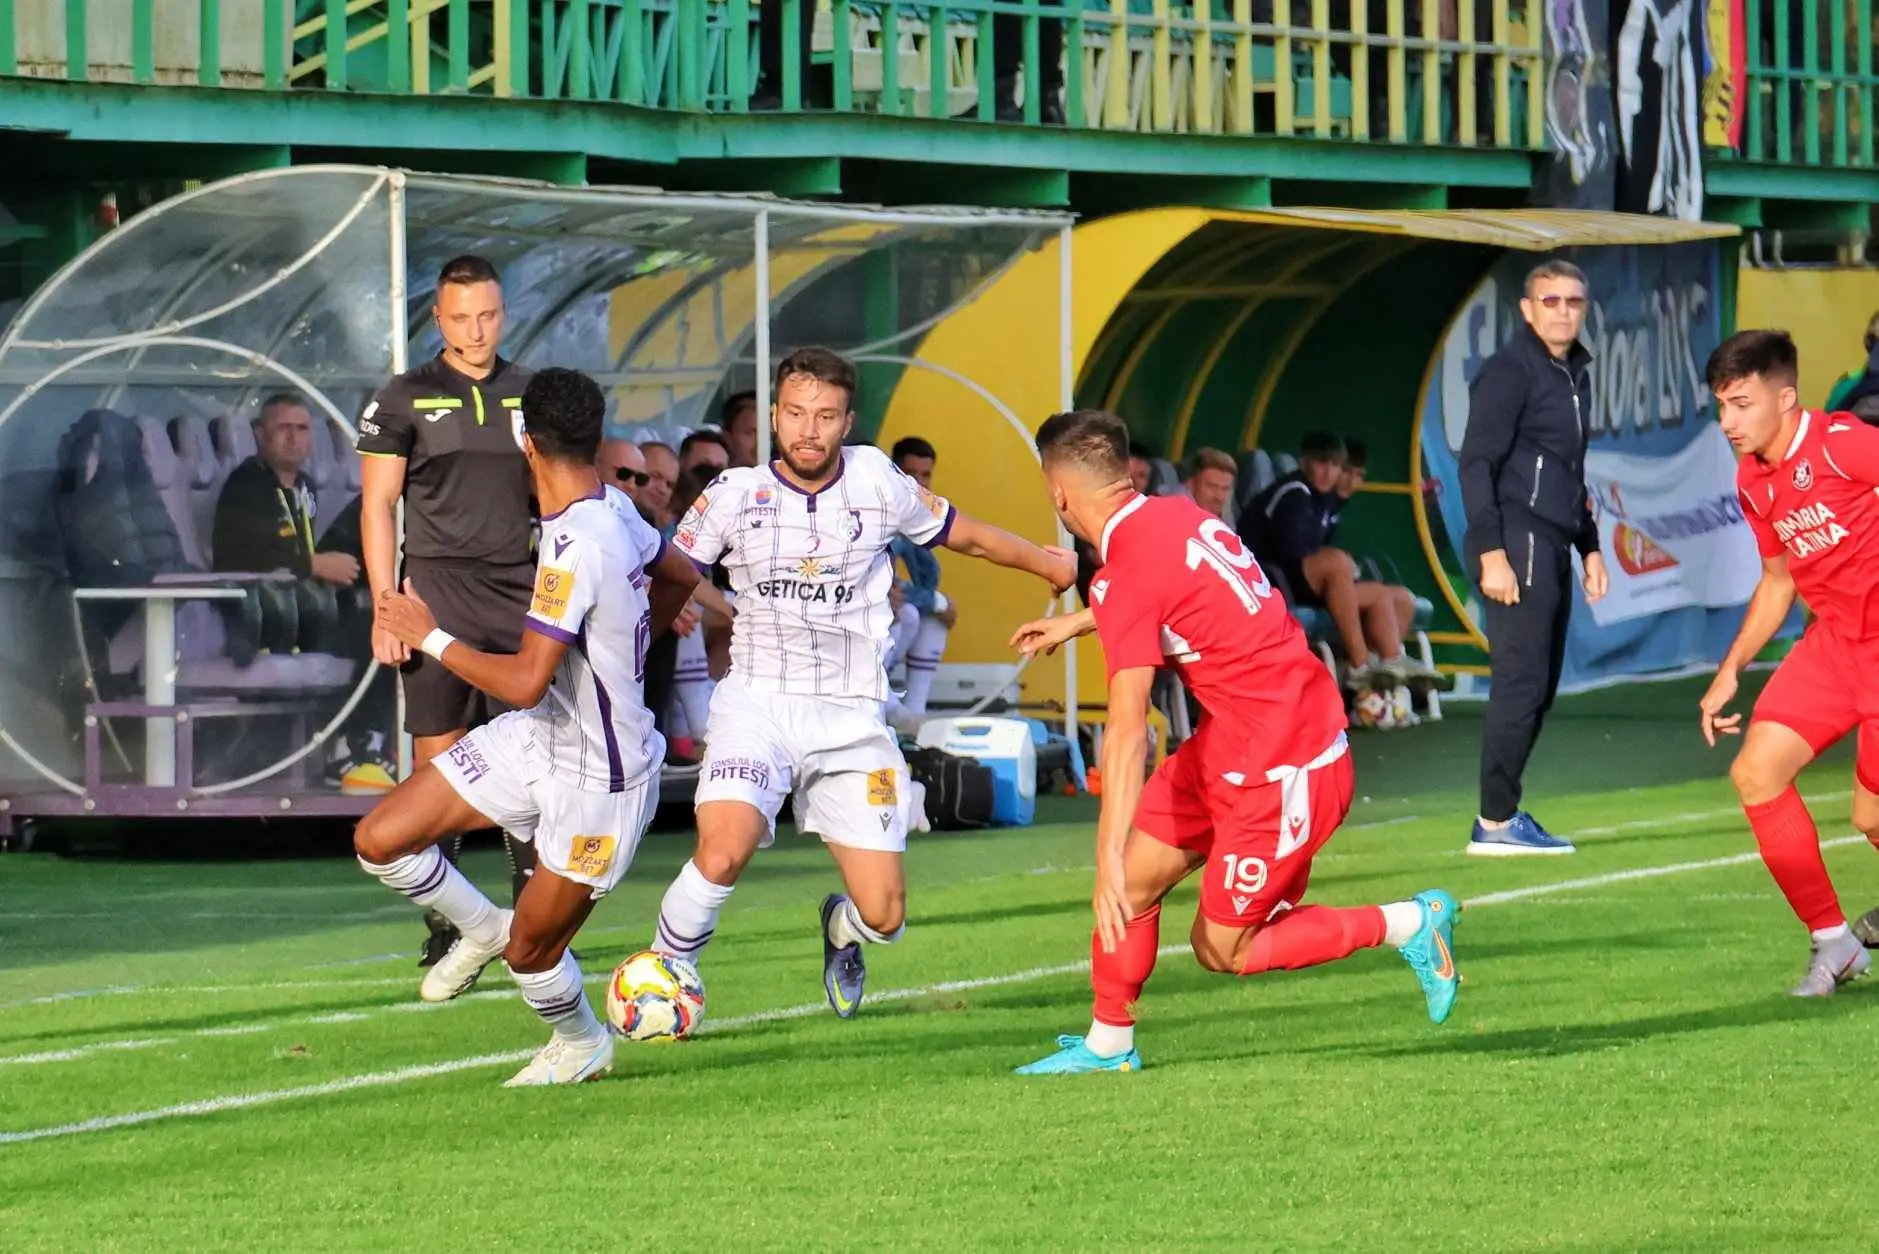 VIDEO  FC Arges – CSM Slatina 1-1. Piteştenii au smuls egalul cu